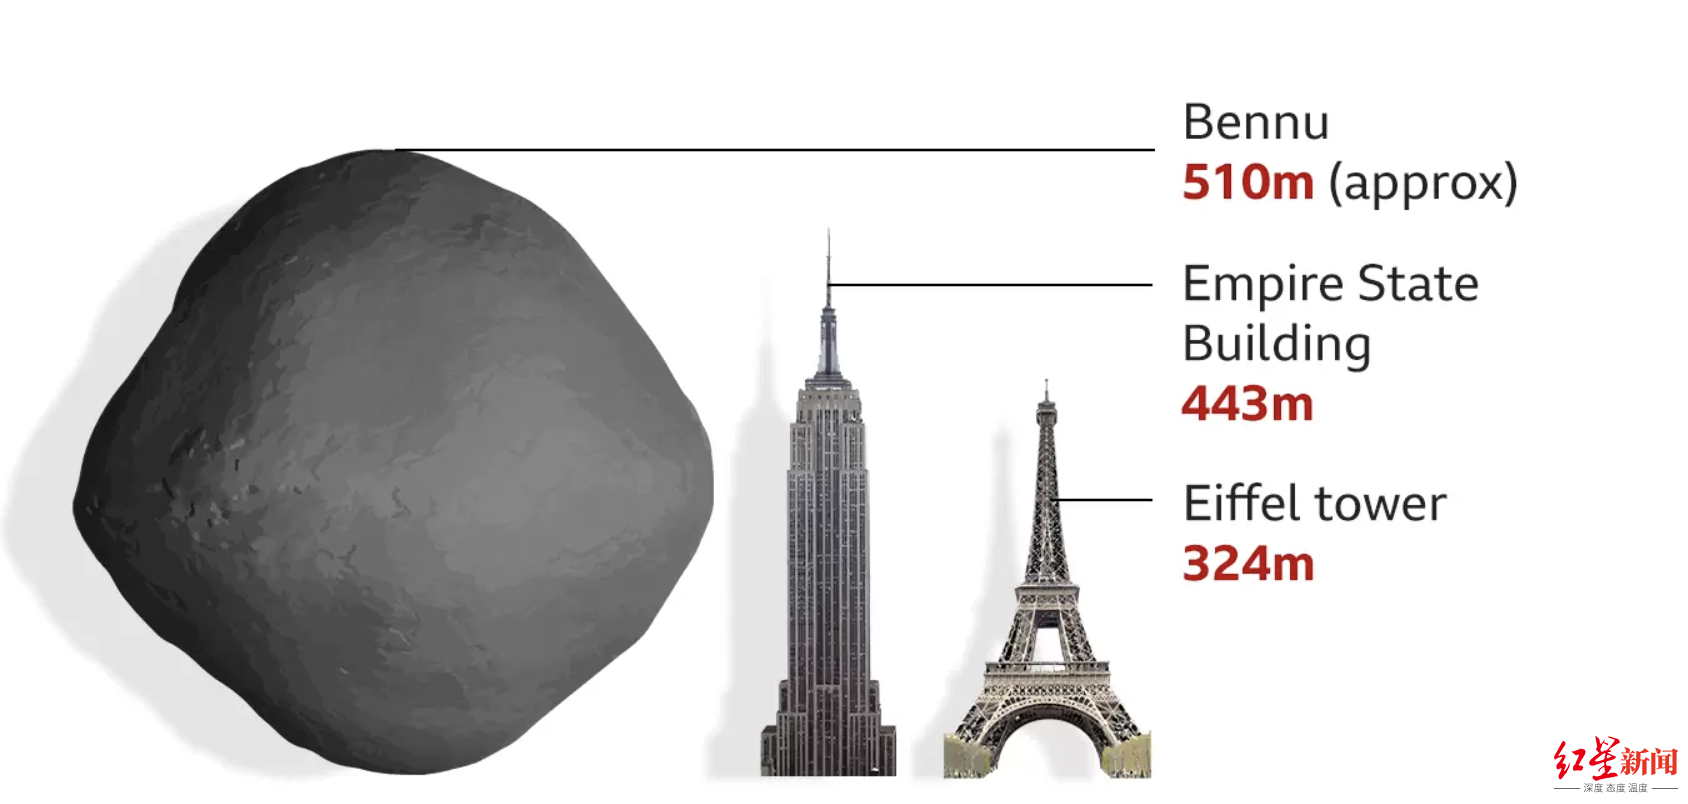 ↑这颗小行星的高度略高于美国帝国大厦，但宽度比帝国大厦宽得多